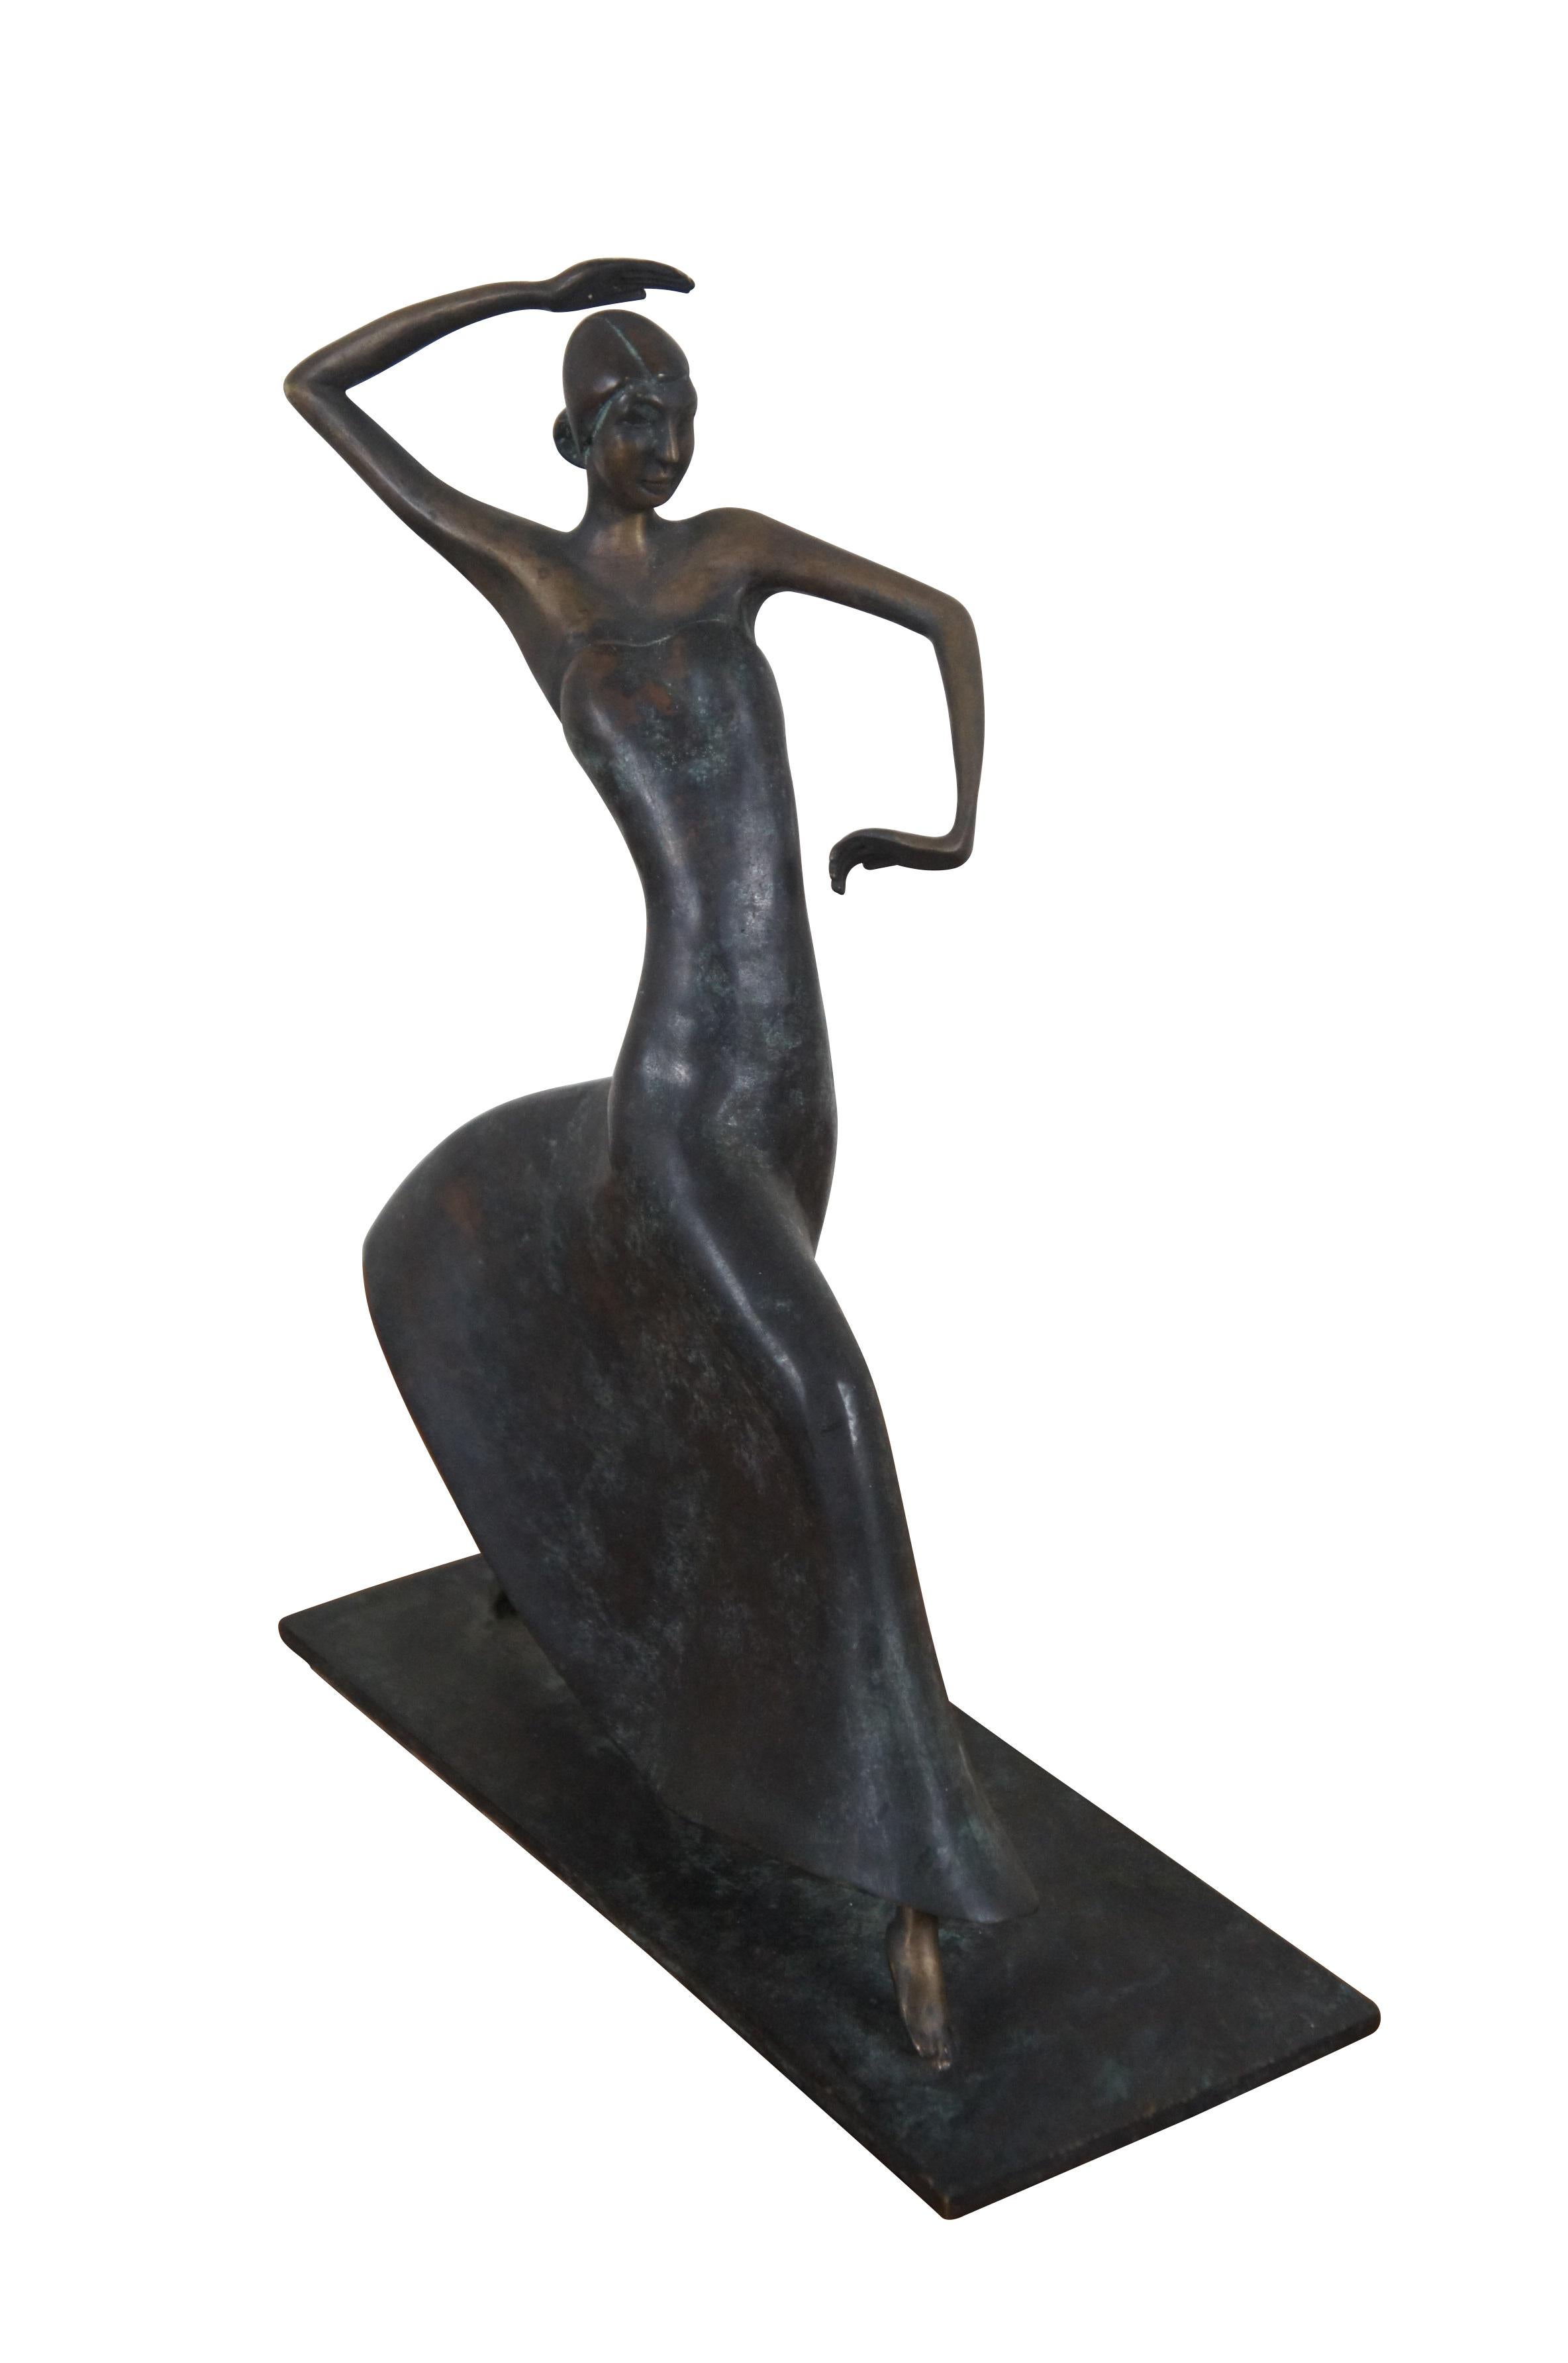 Seltene Bronzestatuette des späten 20. Jahrhunderts von Maitland Smith, inspiriert von Karl Hagenauers Art-déco-Skulptur der Tänzerin Josephine Baker aus den 1930er Jahren. Handgefertigt auf den Philippinen.

